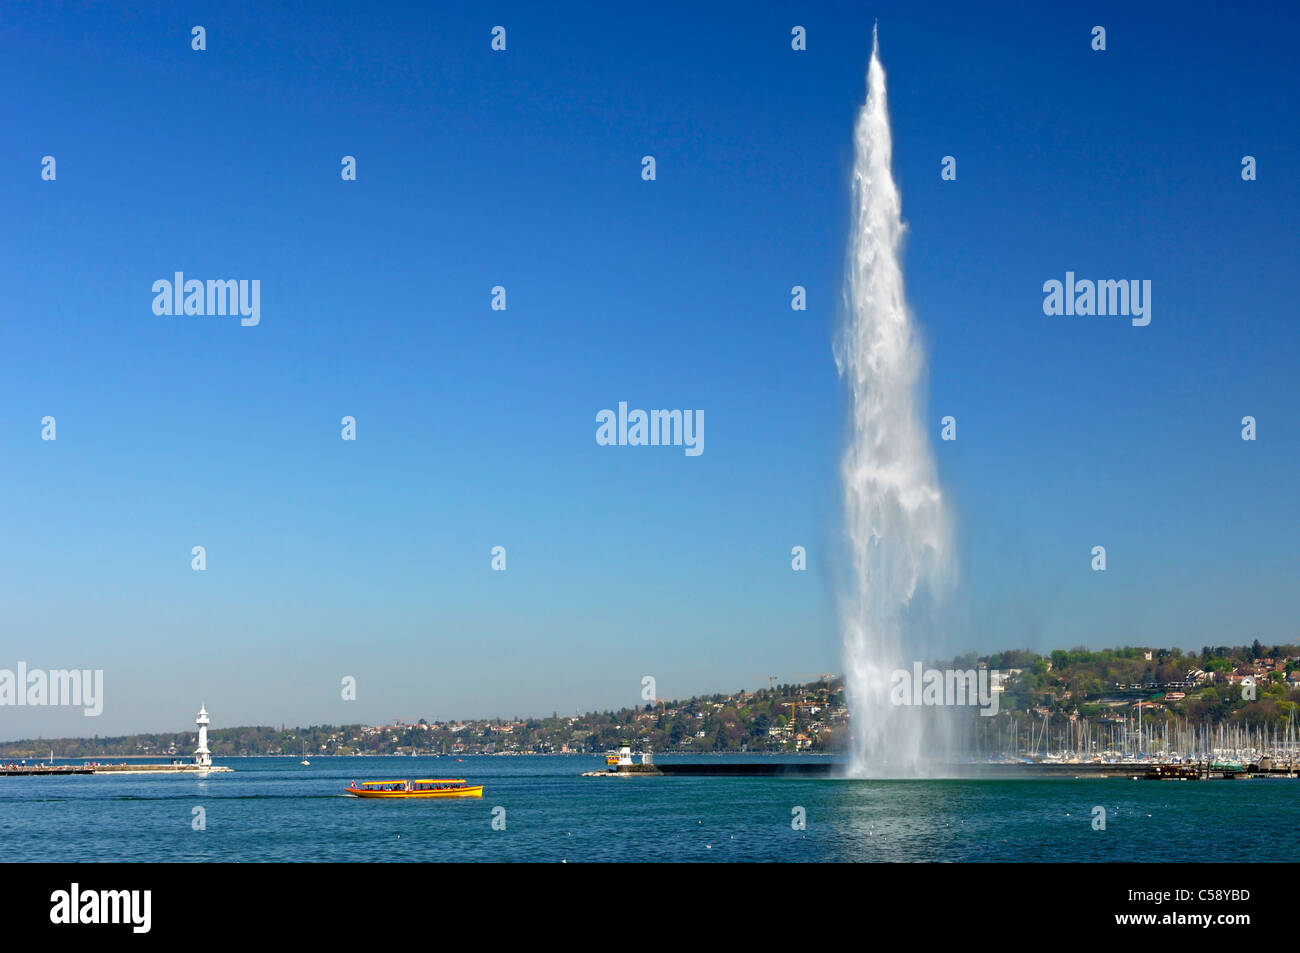 Un giallo ferry boat è passante il gigante fontana Jet d'Eau presso il porto di Rade bassin, sul Lago di Ginevra, Ginevra, Svizzera Foto Stock